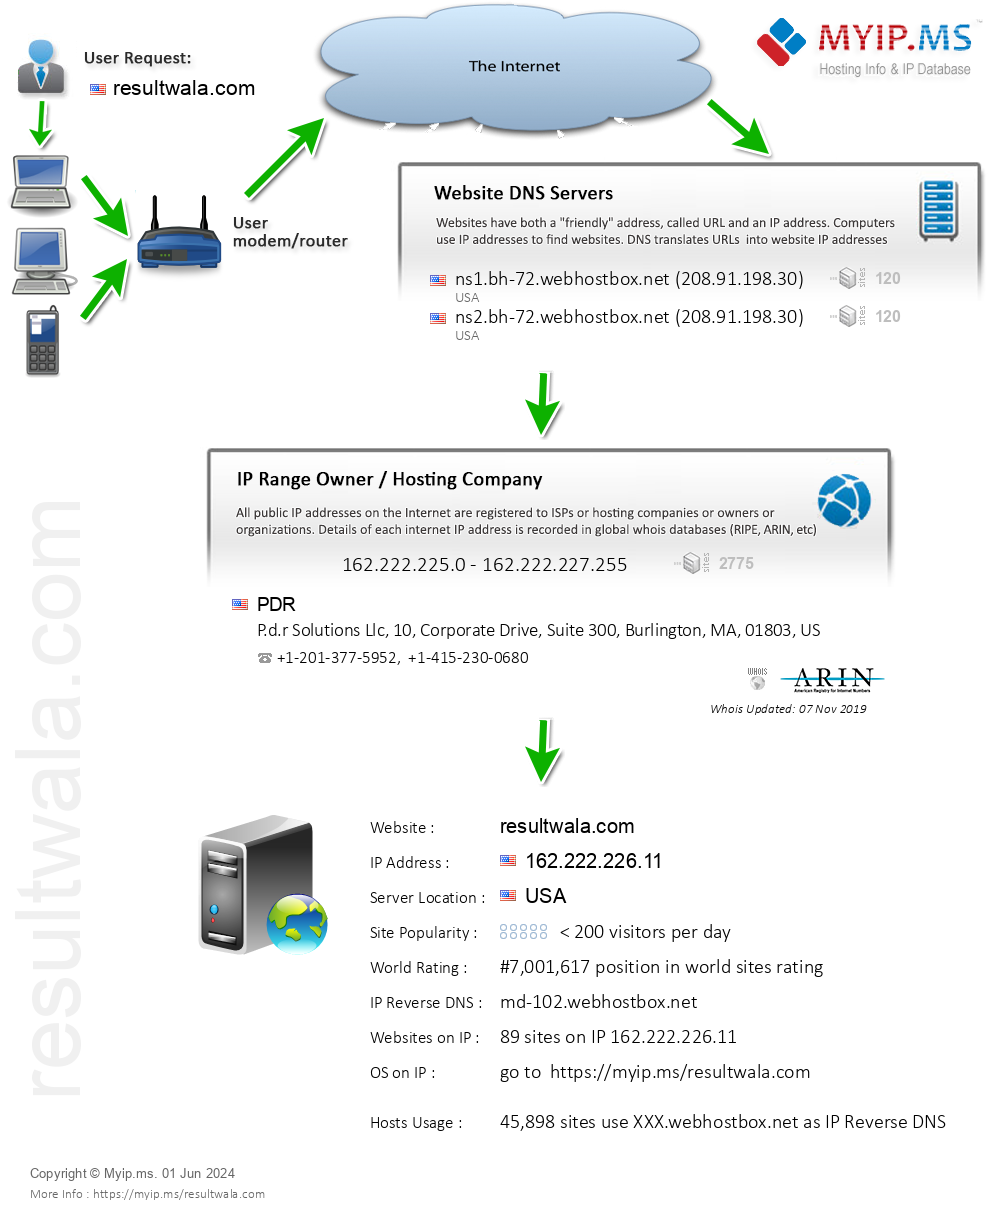 Resultwala.com - Website Hosting Visual IP Diagram